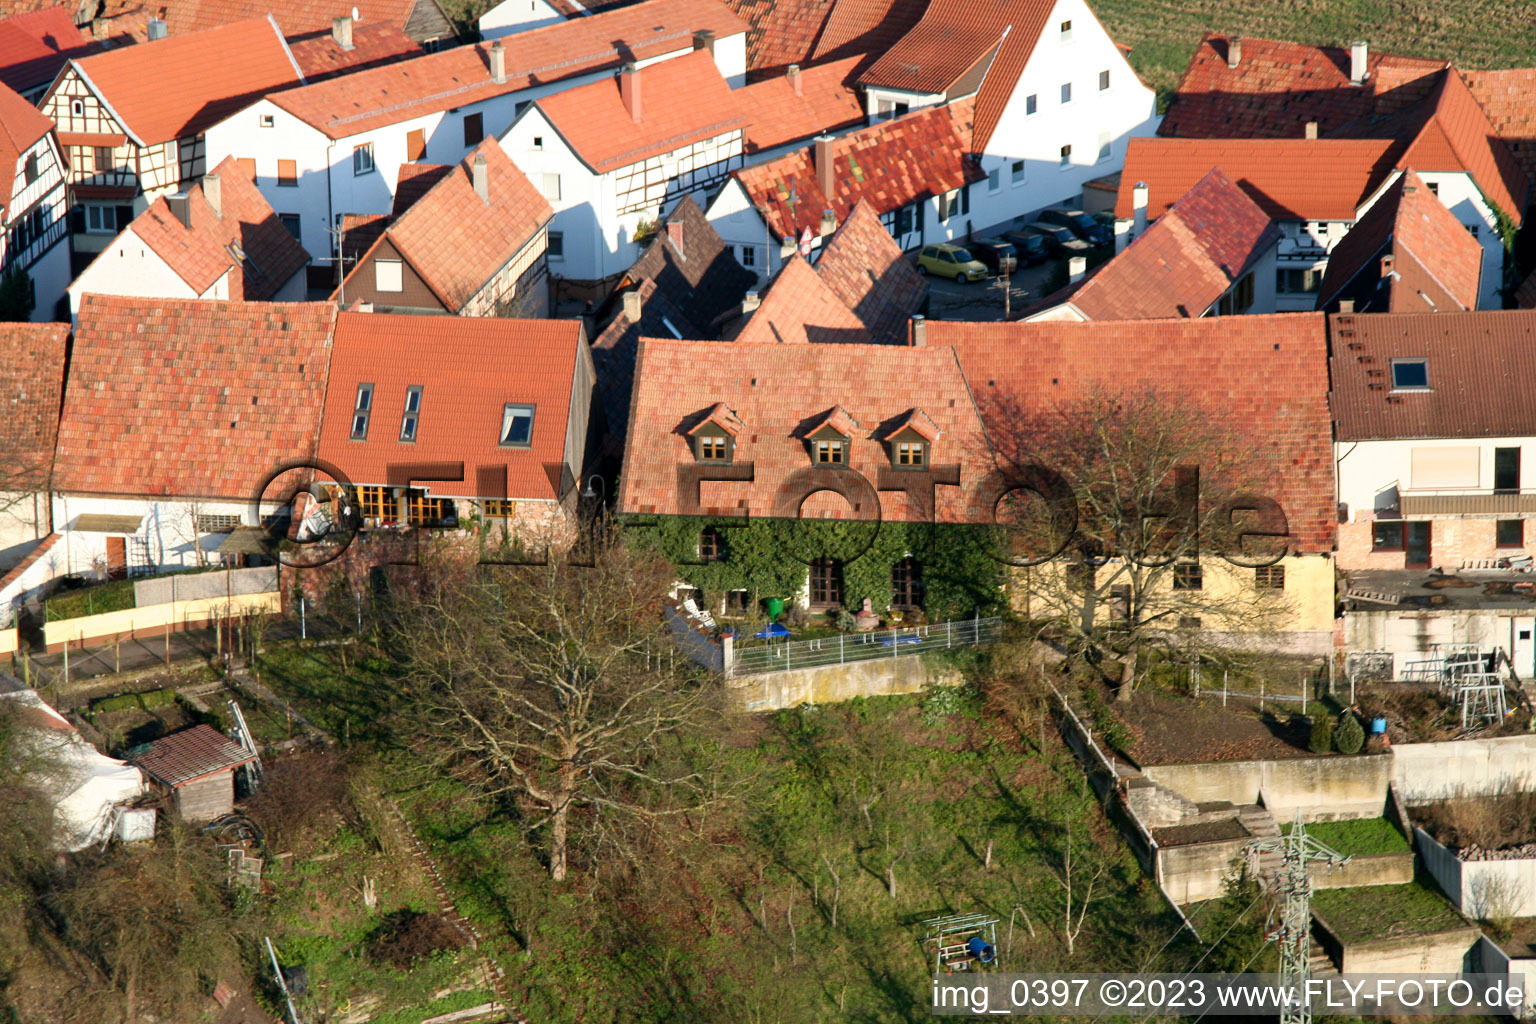 Jockgrim Bahnhofstr im Bundesland Rheinland-Pfalz, Deutschland aus der Luft betrachtet